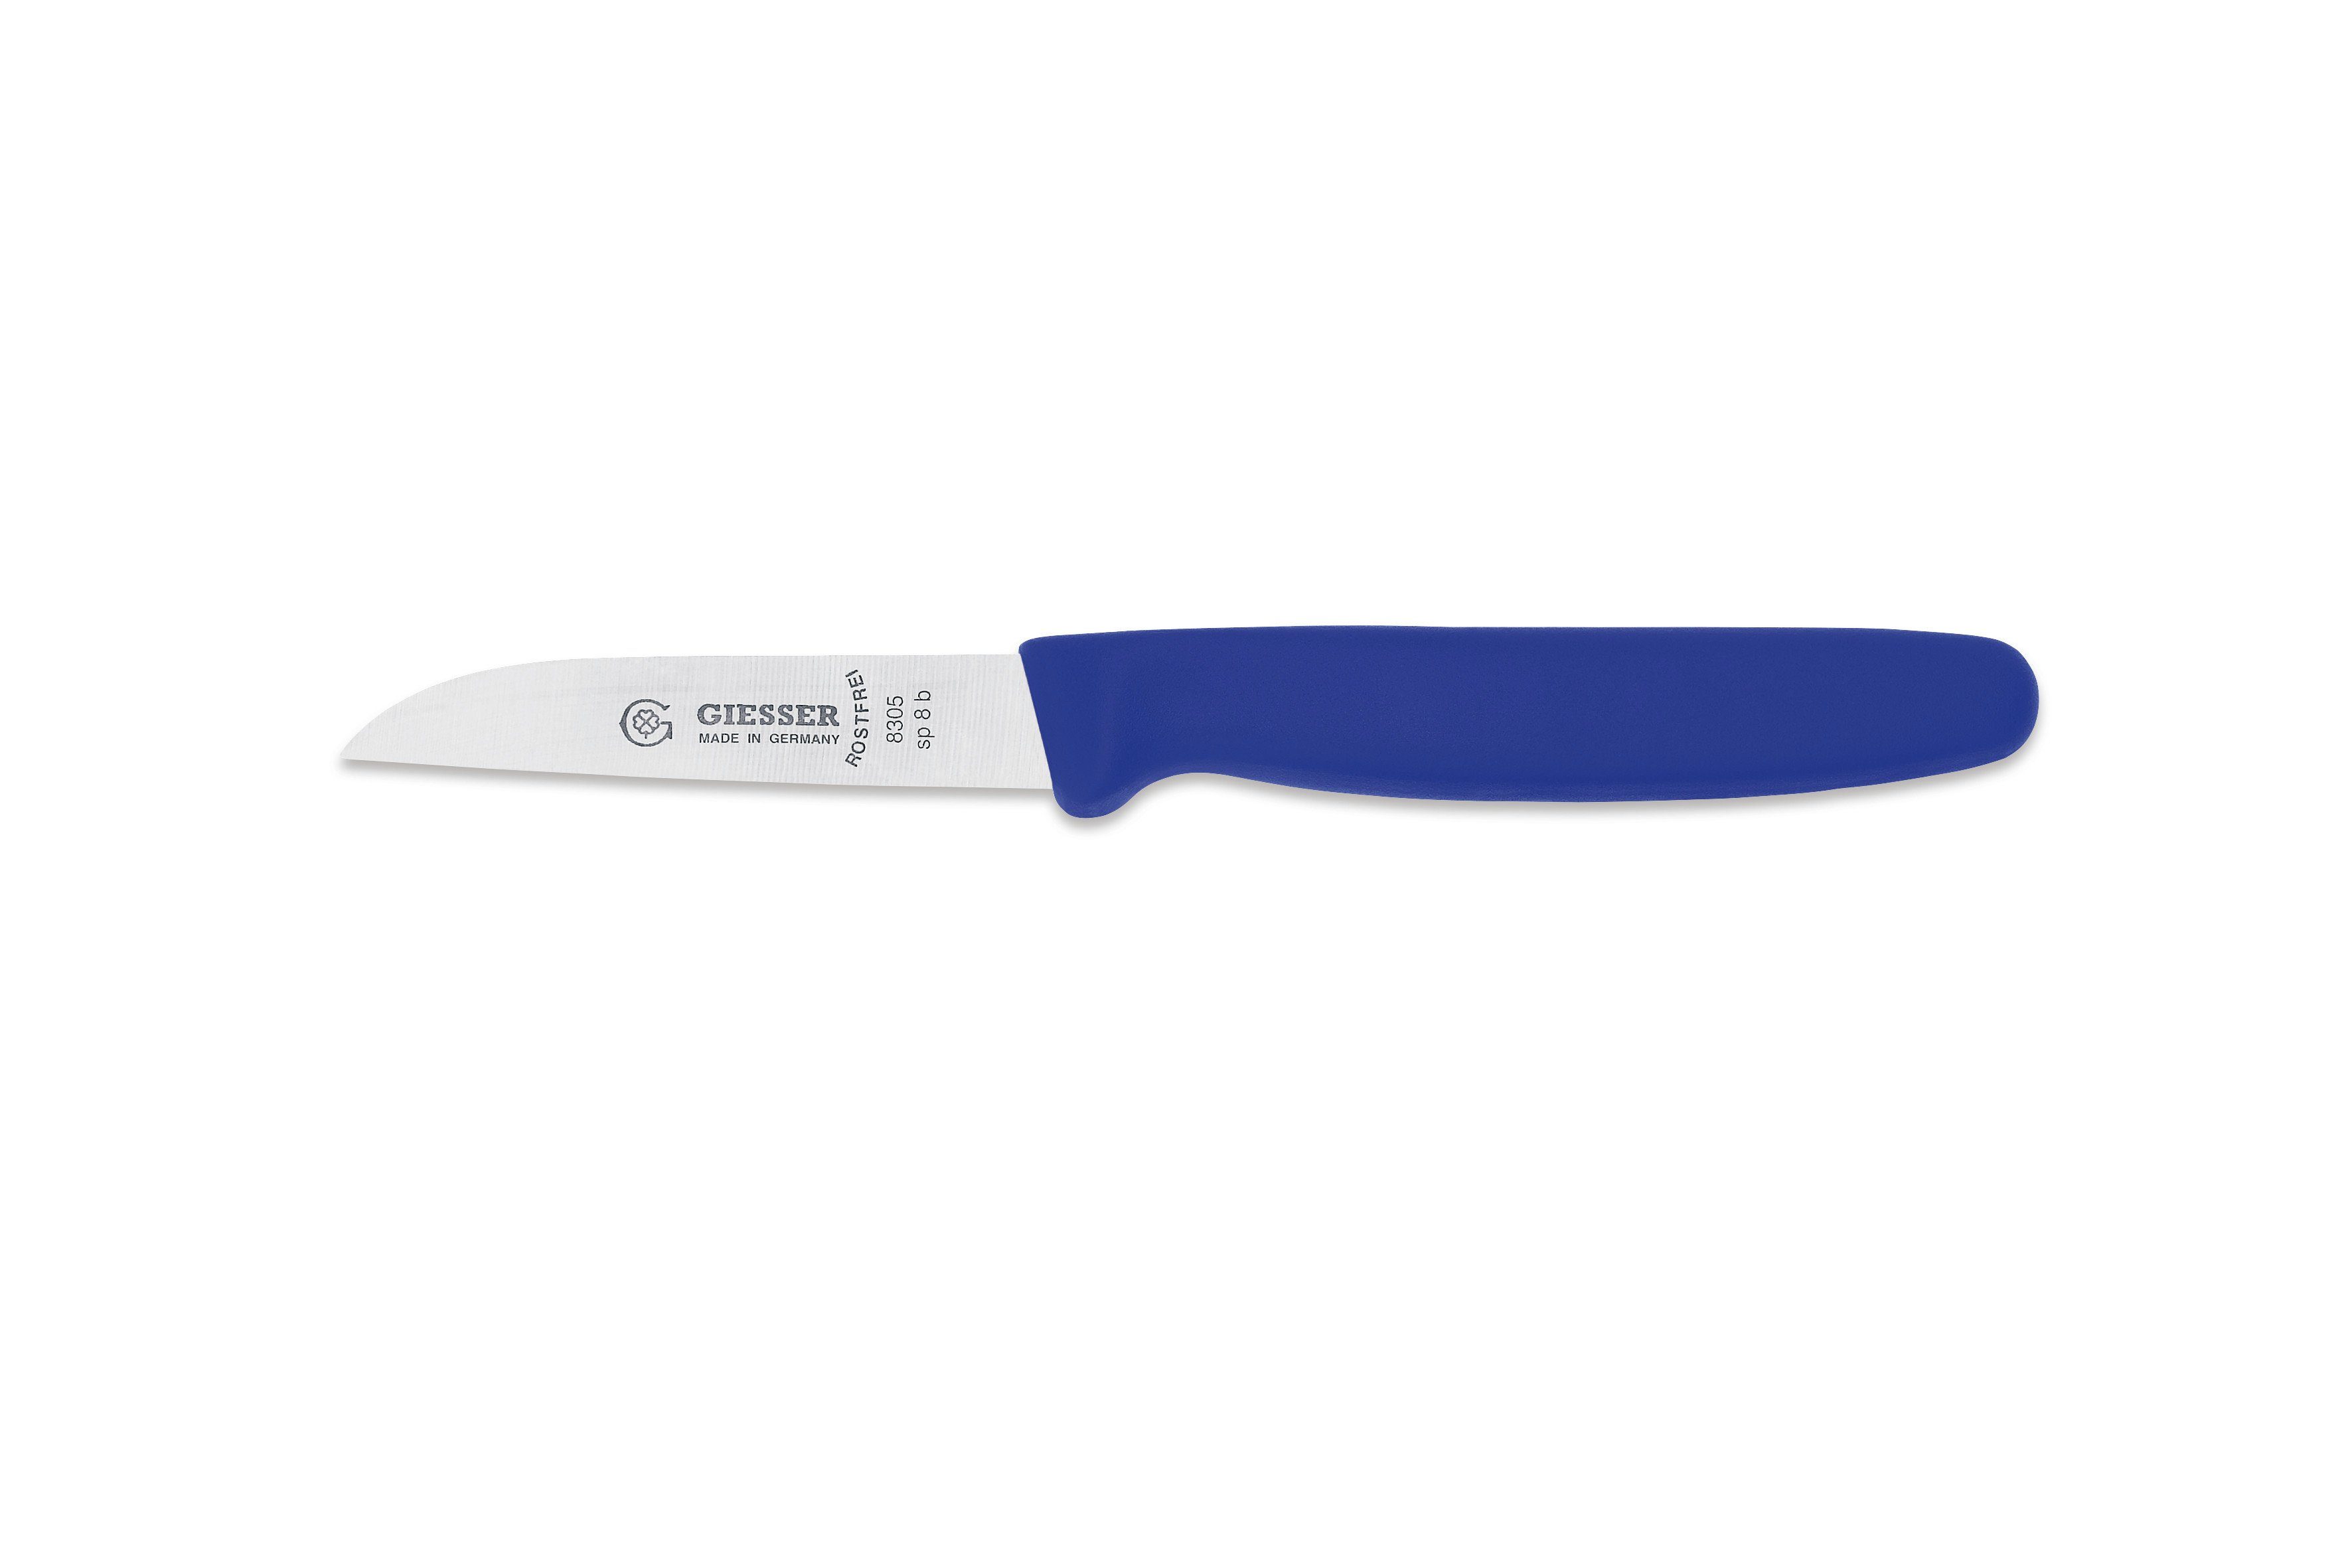 Giesser Messer Gemüsemesser Küchenmesser 8305 sp 8 alle Farben, Küchenmesser gerade Schneide 8 cm, Made in Germany Blau | Gemüsemesser